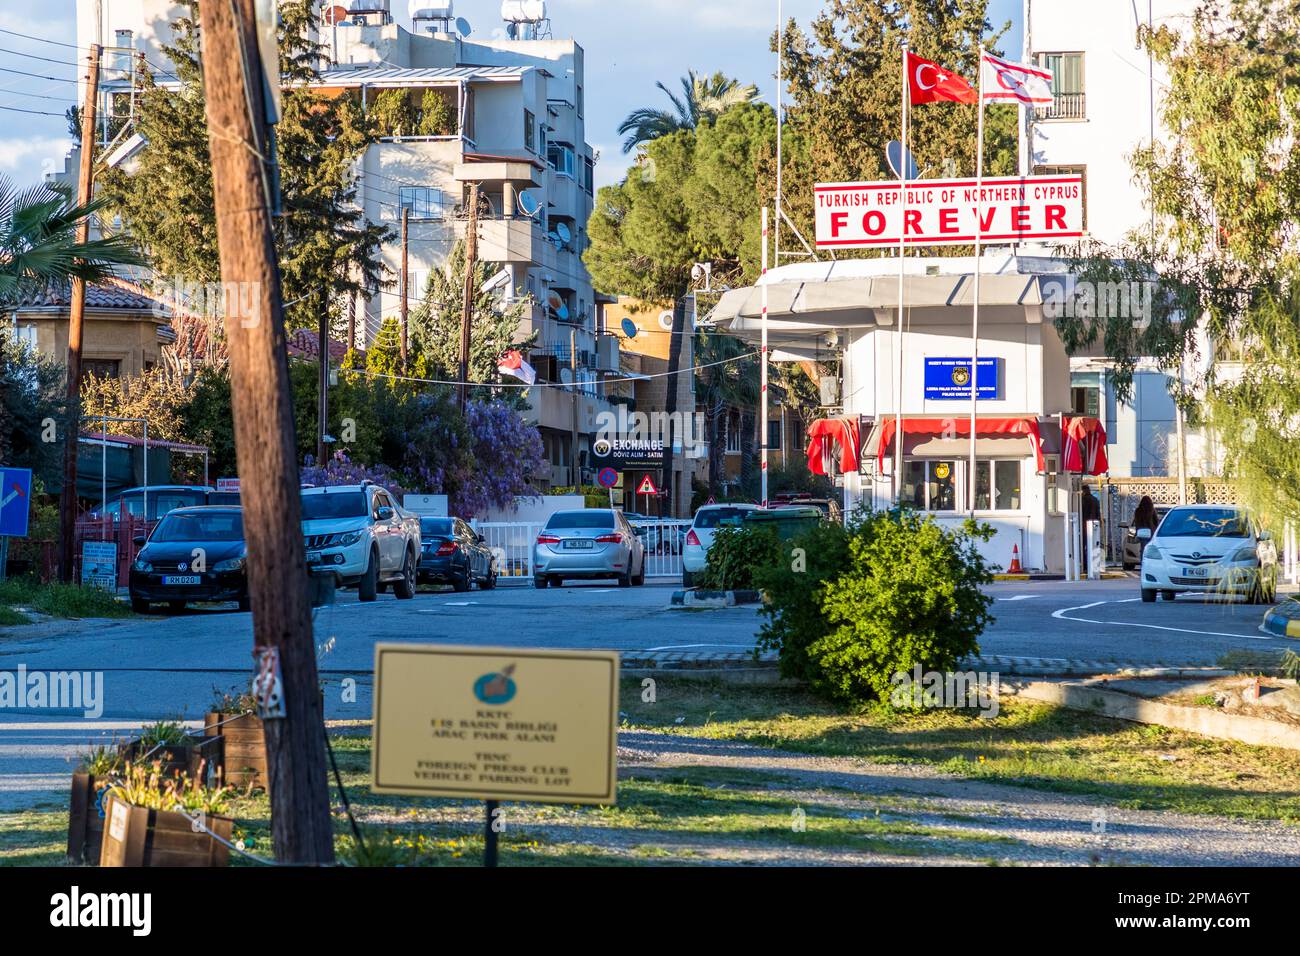 Ledra Palace frontiera, Nicosia. Vista dalla zona cuscinetto al punto di controllo turco-cipriota con le bandiere della Repubblica turca di Cipro settentrionale e della Turchia. Comune di Nicosia, Cipro Foto Stock